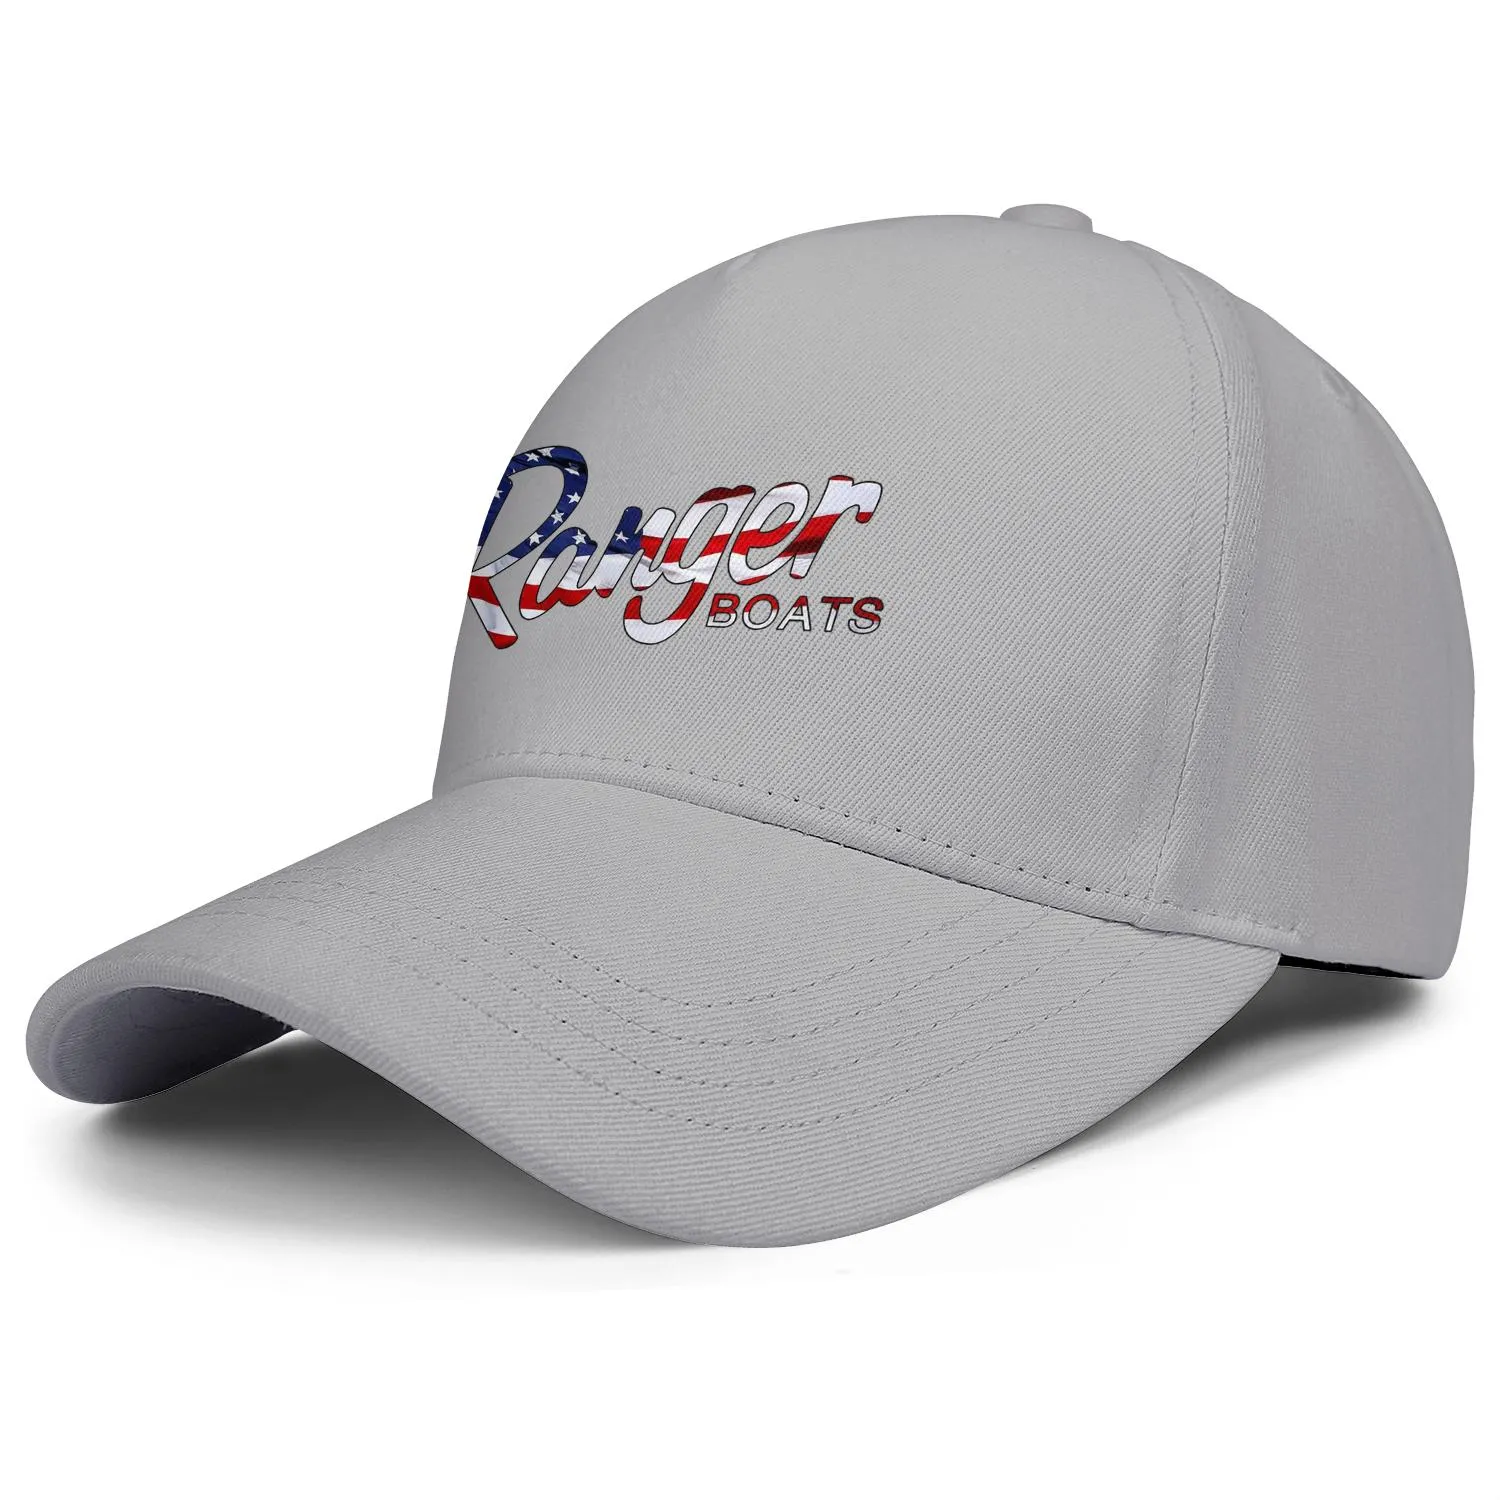 Ranger Boats logo est voor mannen en vrouwen verstelbare trucker cap ontwerp vintage gepersonaliseerde trendy baseballhoeden nog steeds aan het bouwen toge1408399